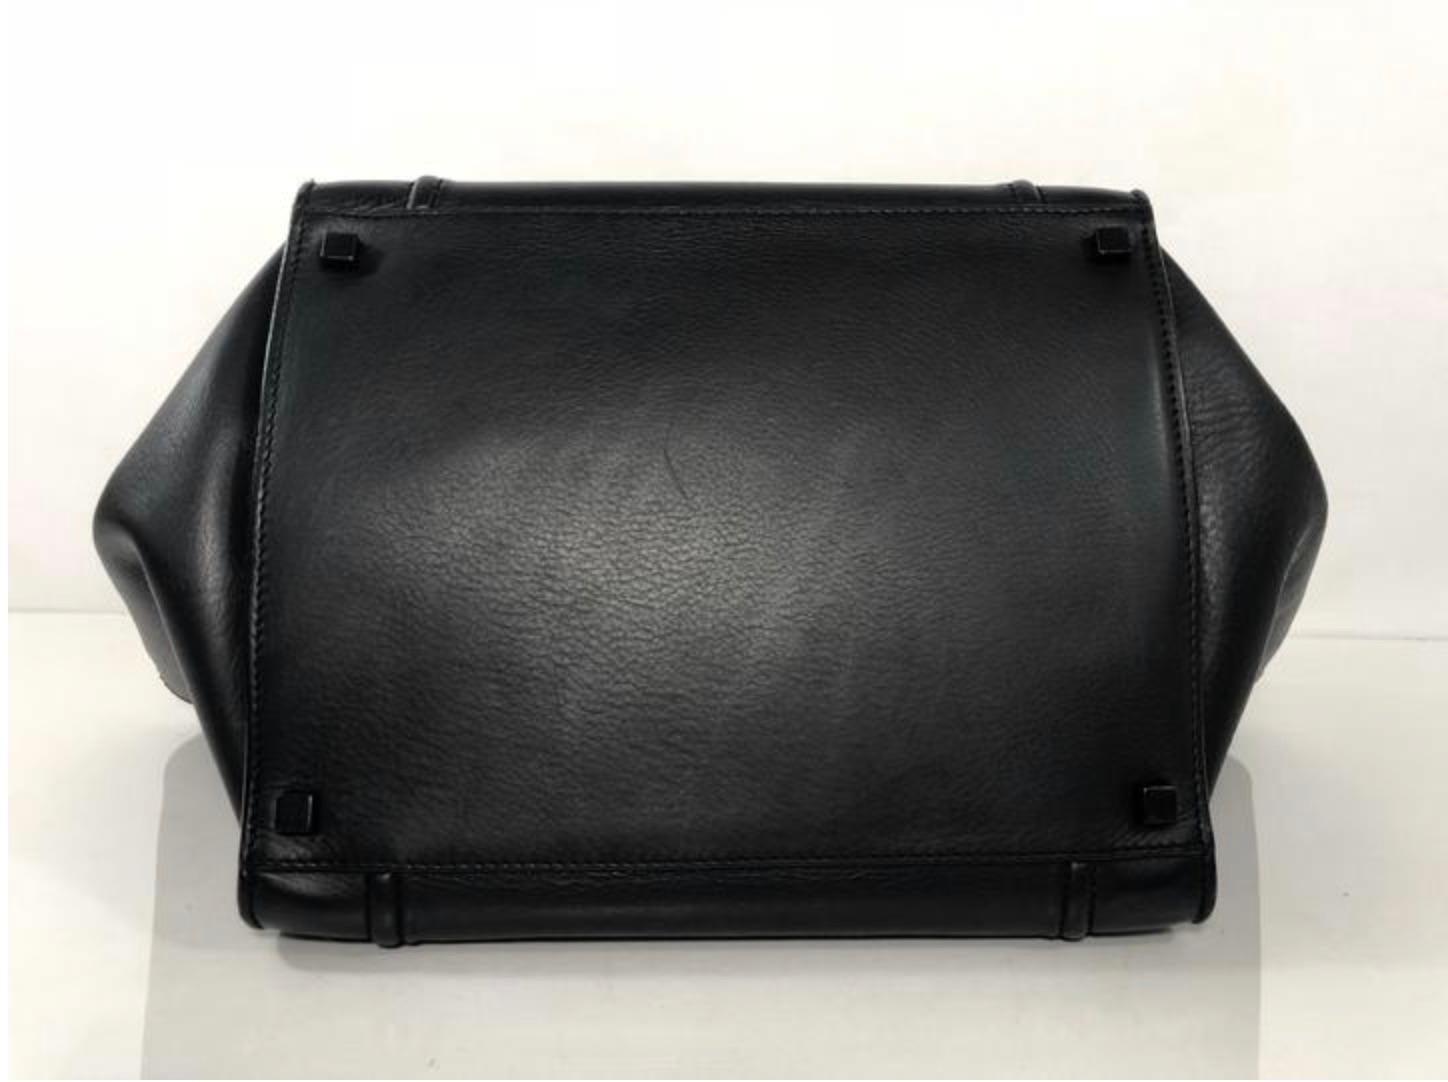 Celine Leather Phantom Medium Black Satchel Tote Handbag 4